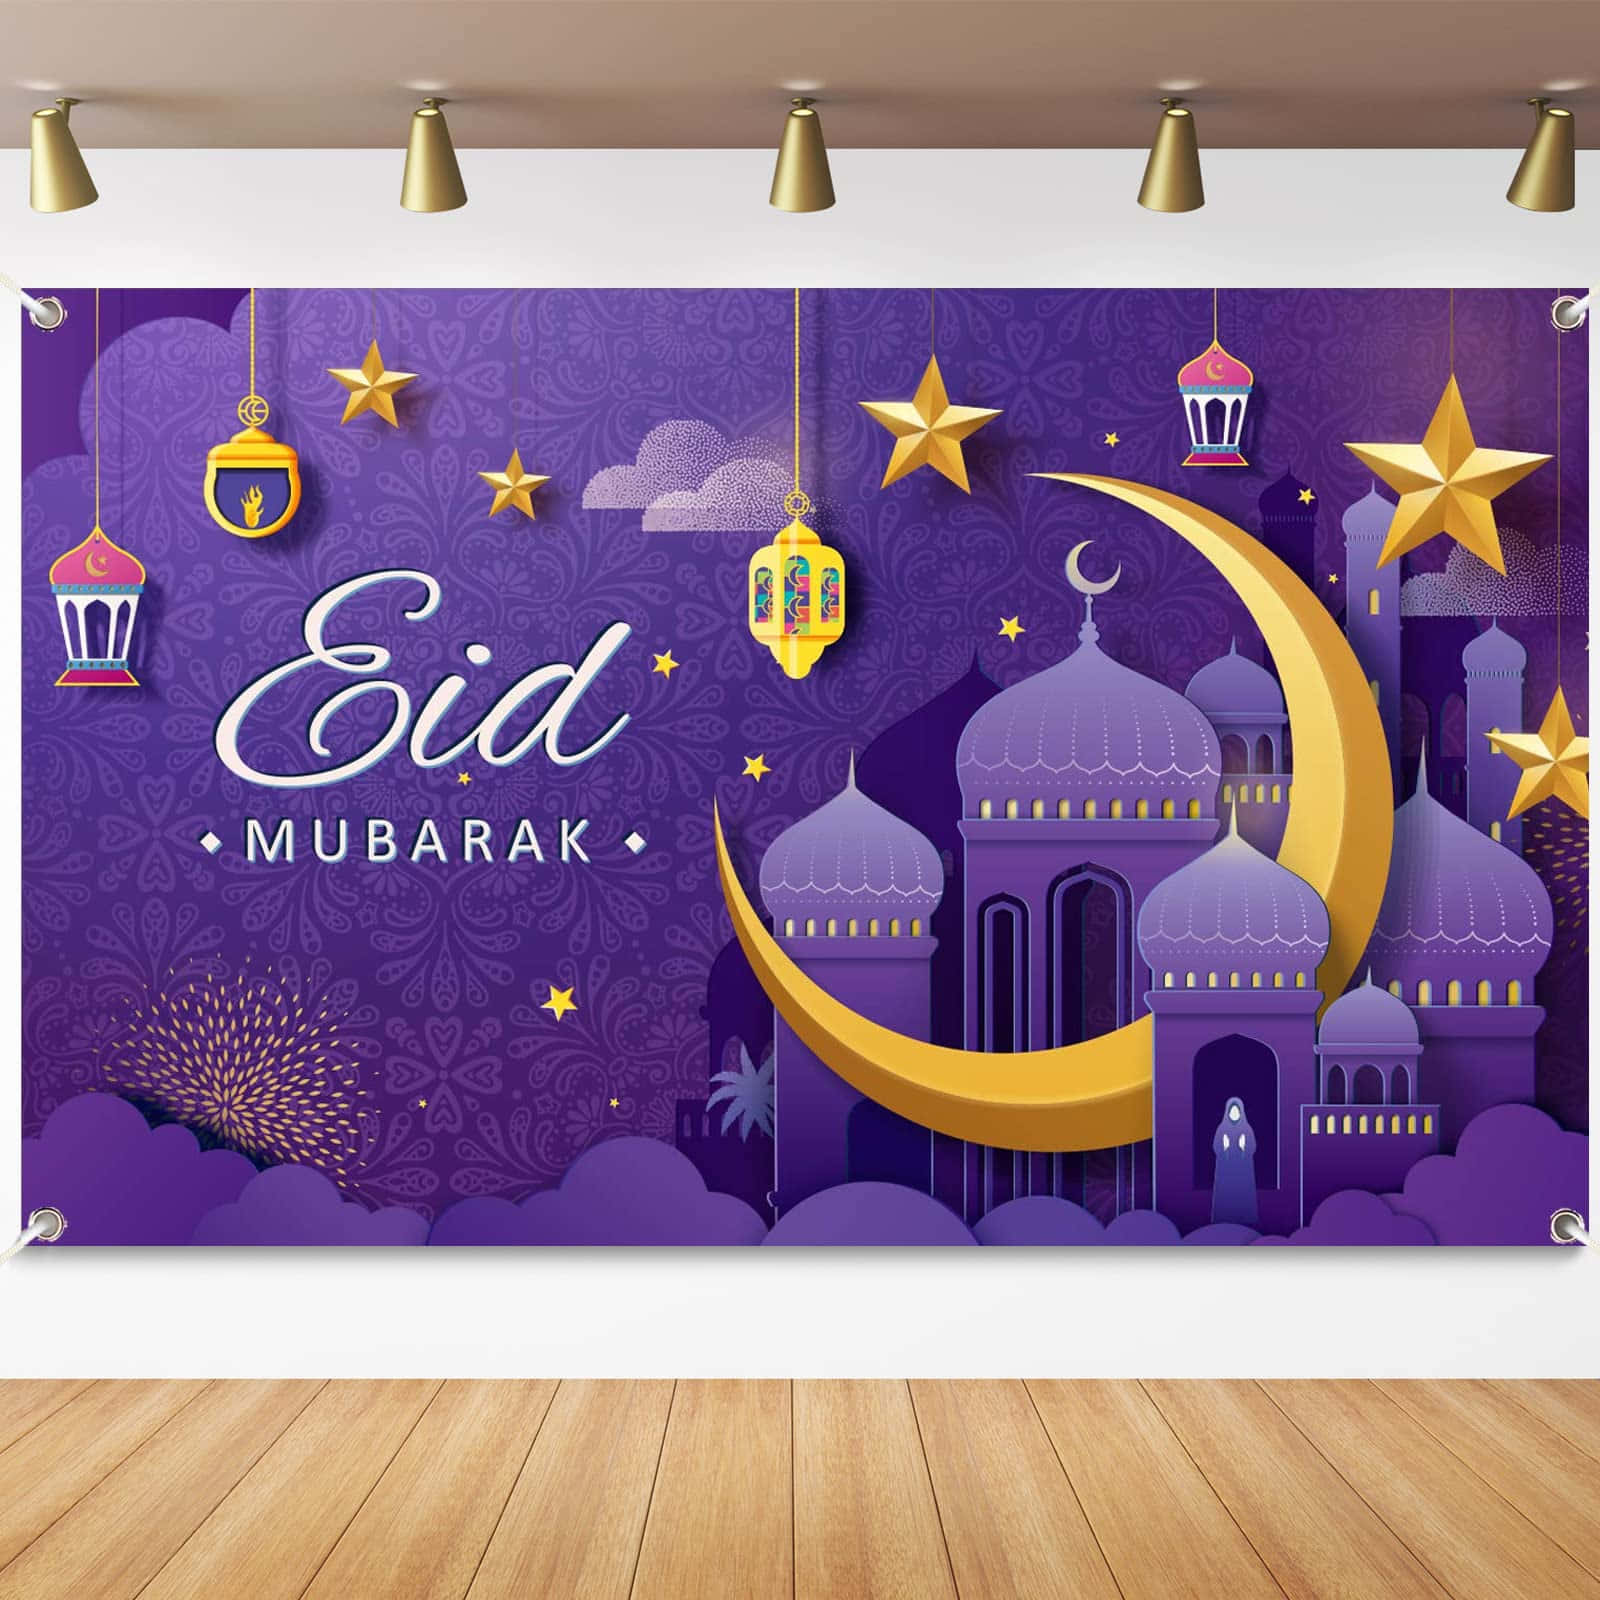 Wirsenden Dir Unsere Herzlichen Wünsche Mit Diesem Wunderschönen Eid Mubarak Design!